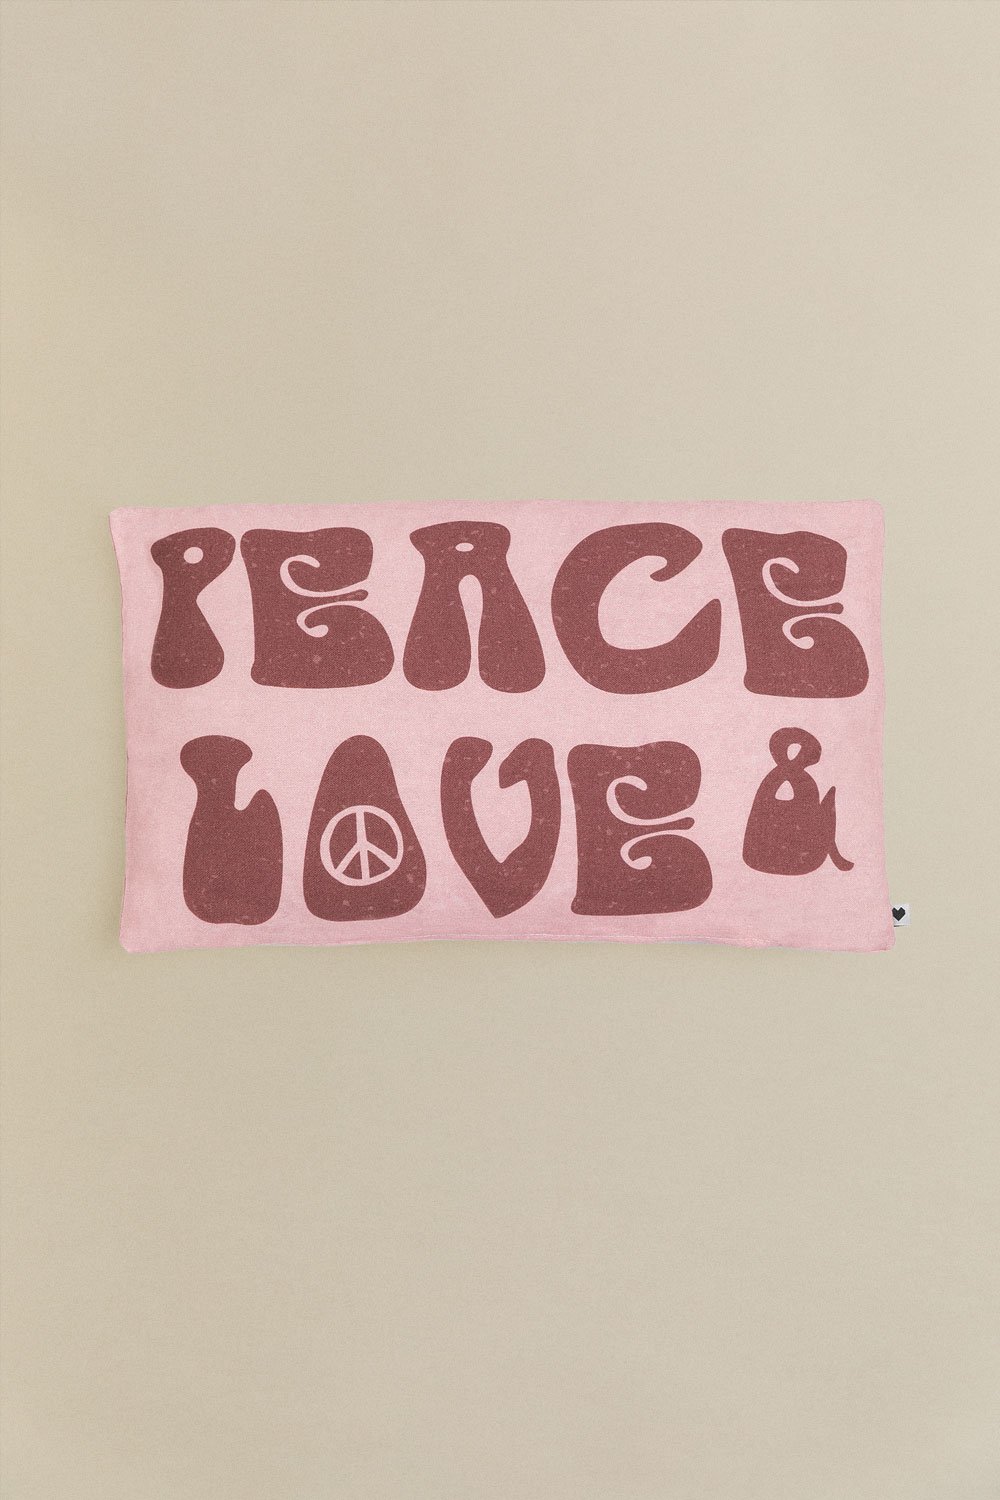 Rechthoekige katoenen hoes (30x50 cm) Peace & Love, galerij beeld 1